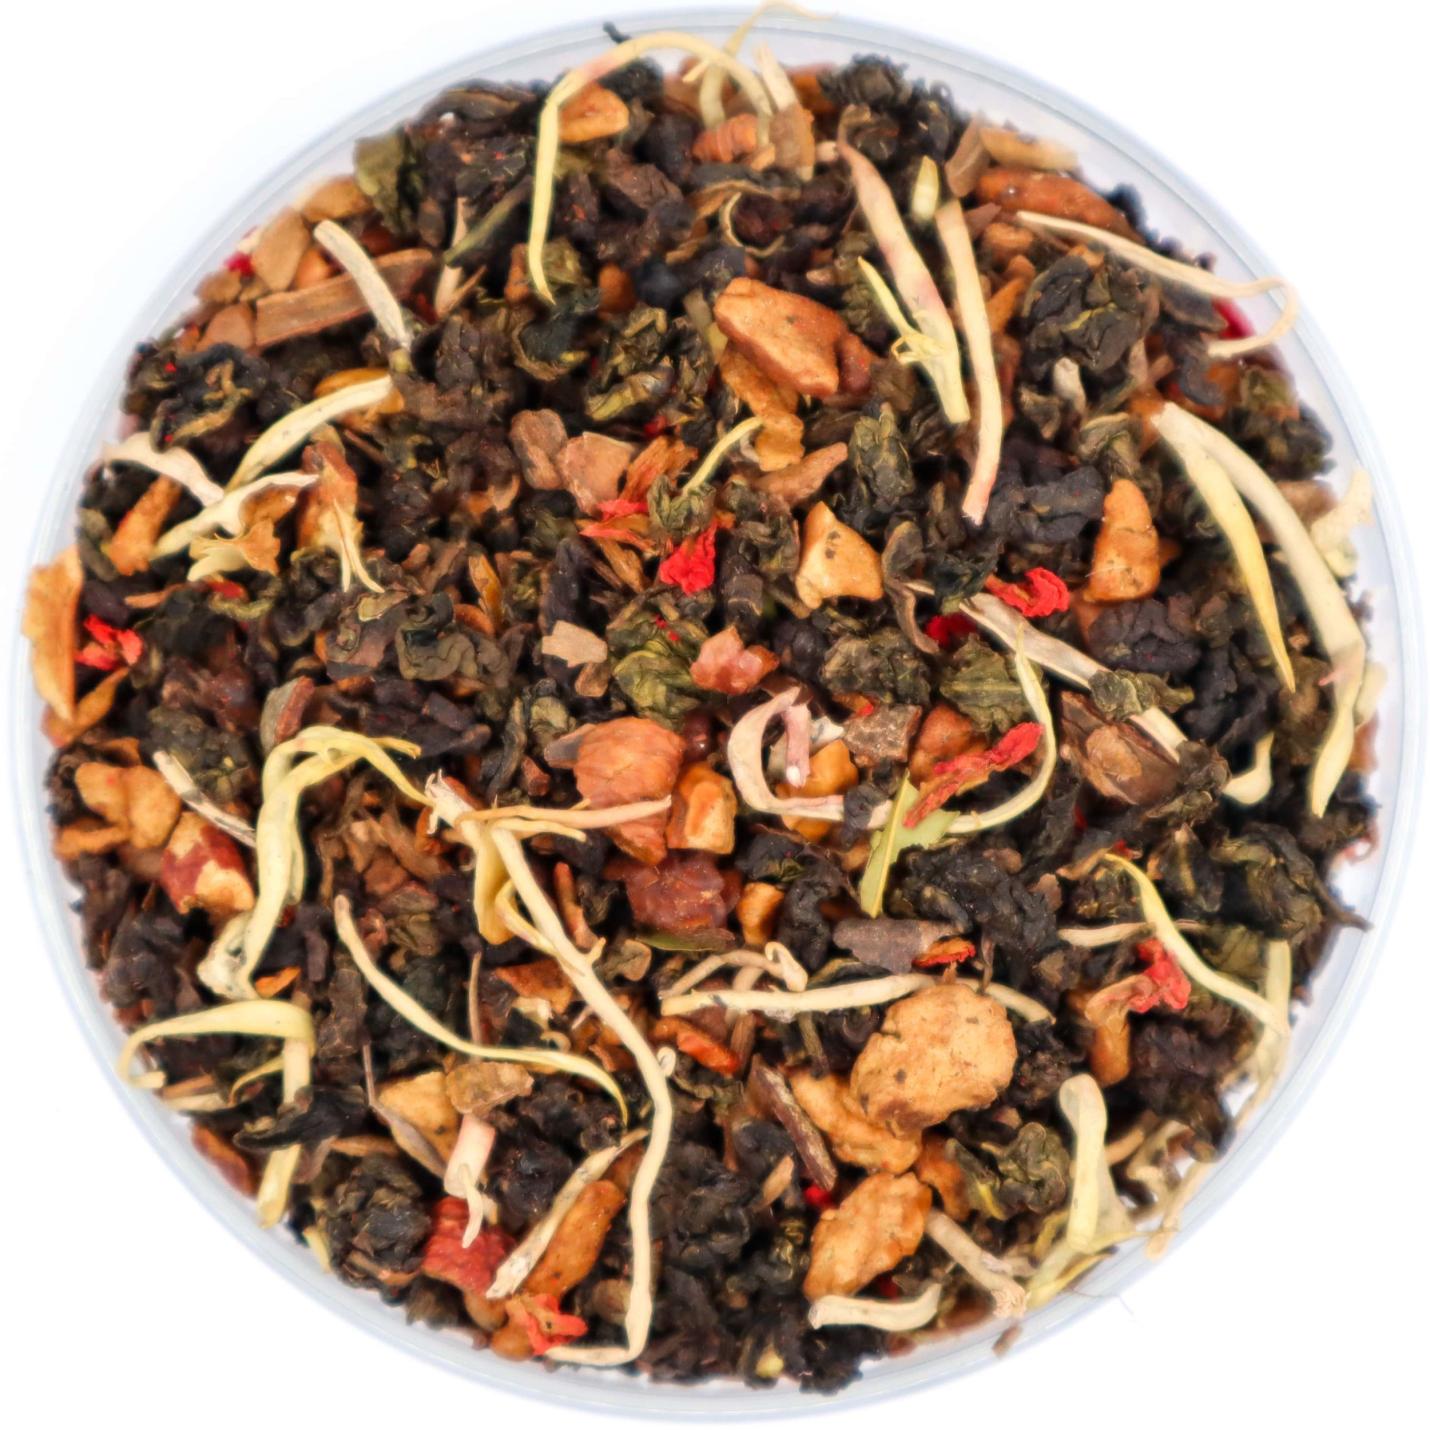 Autumn Oolong - Losse Thee - Oolong thee met een smaakexplosie - 130 gram Amberpot